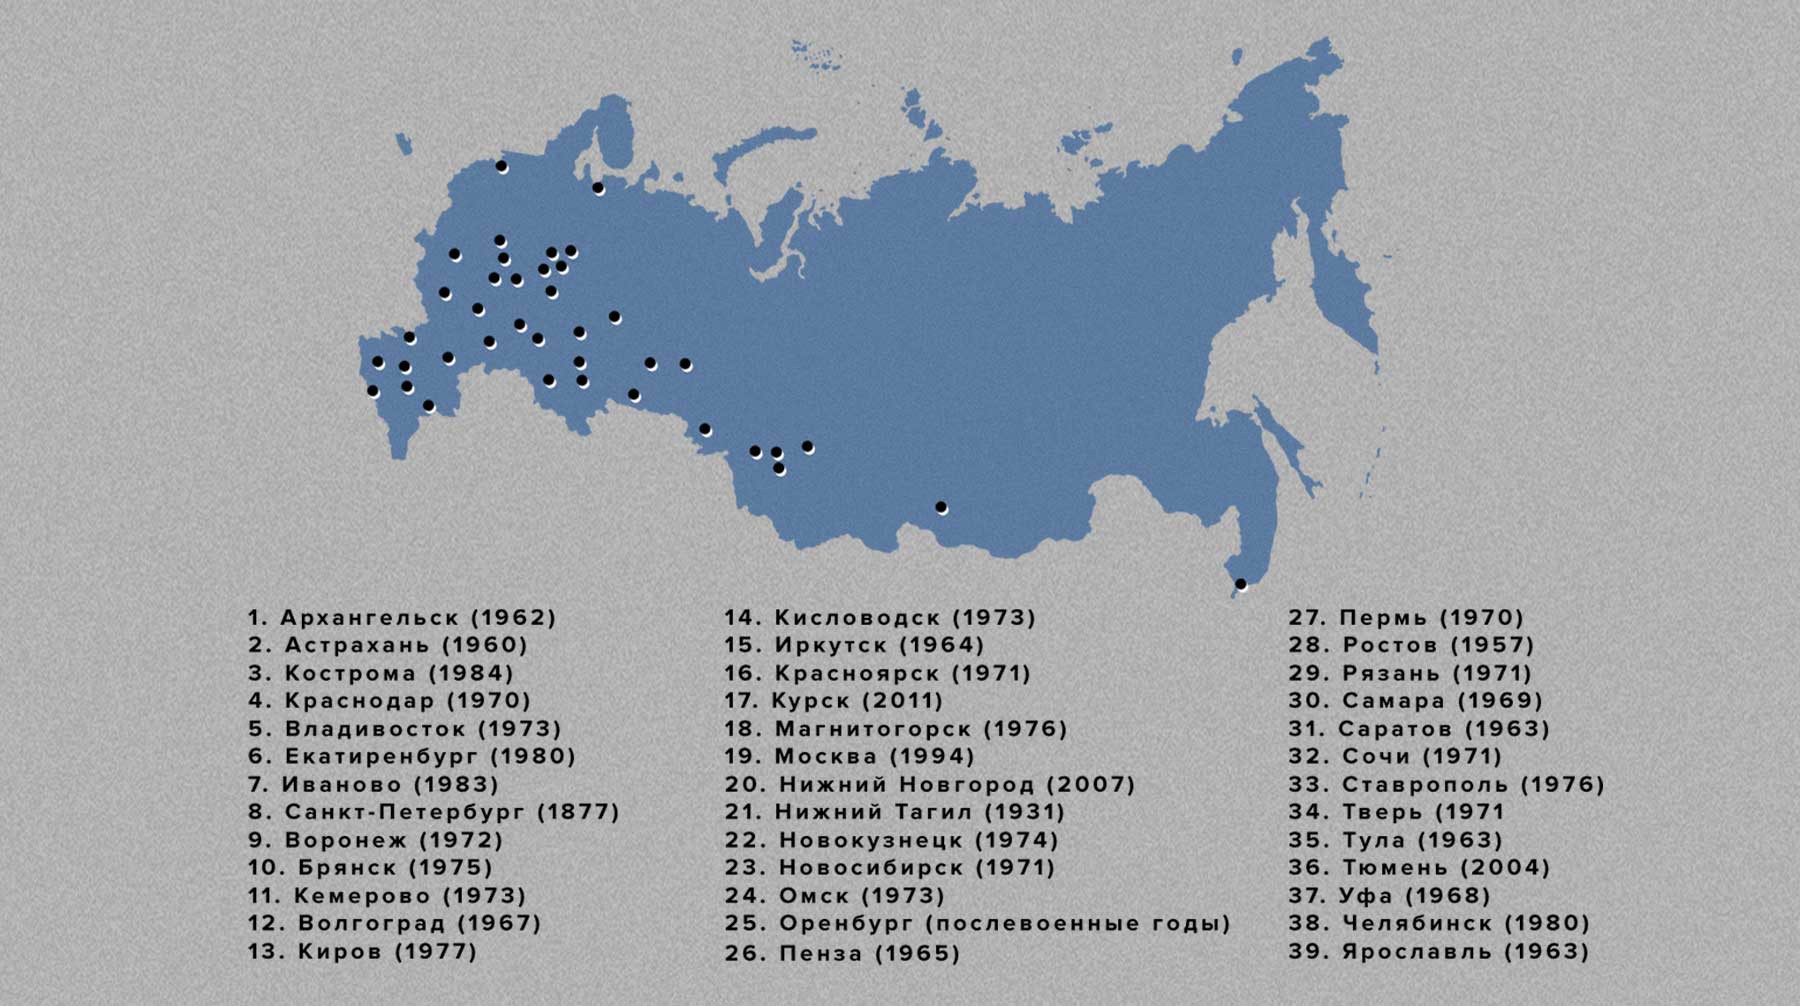 Карта цирков Росгосцирка России (с датами постройки).